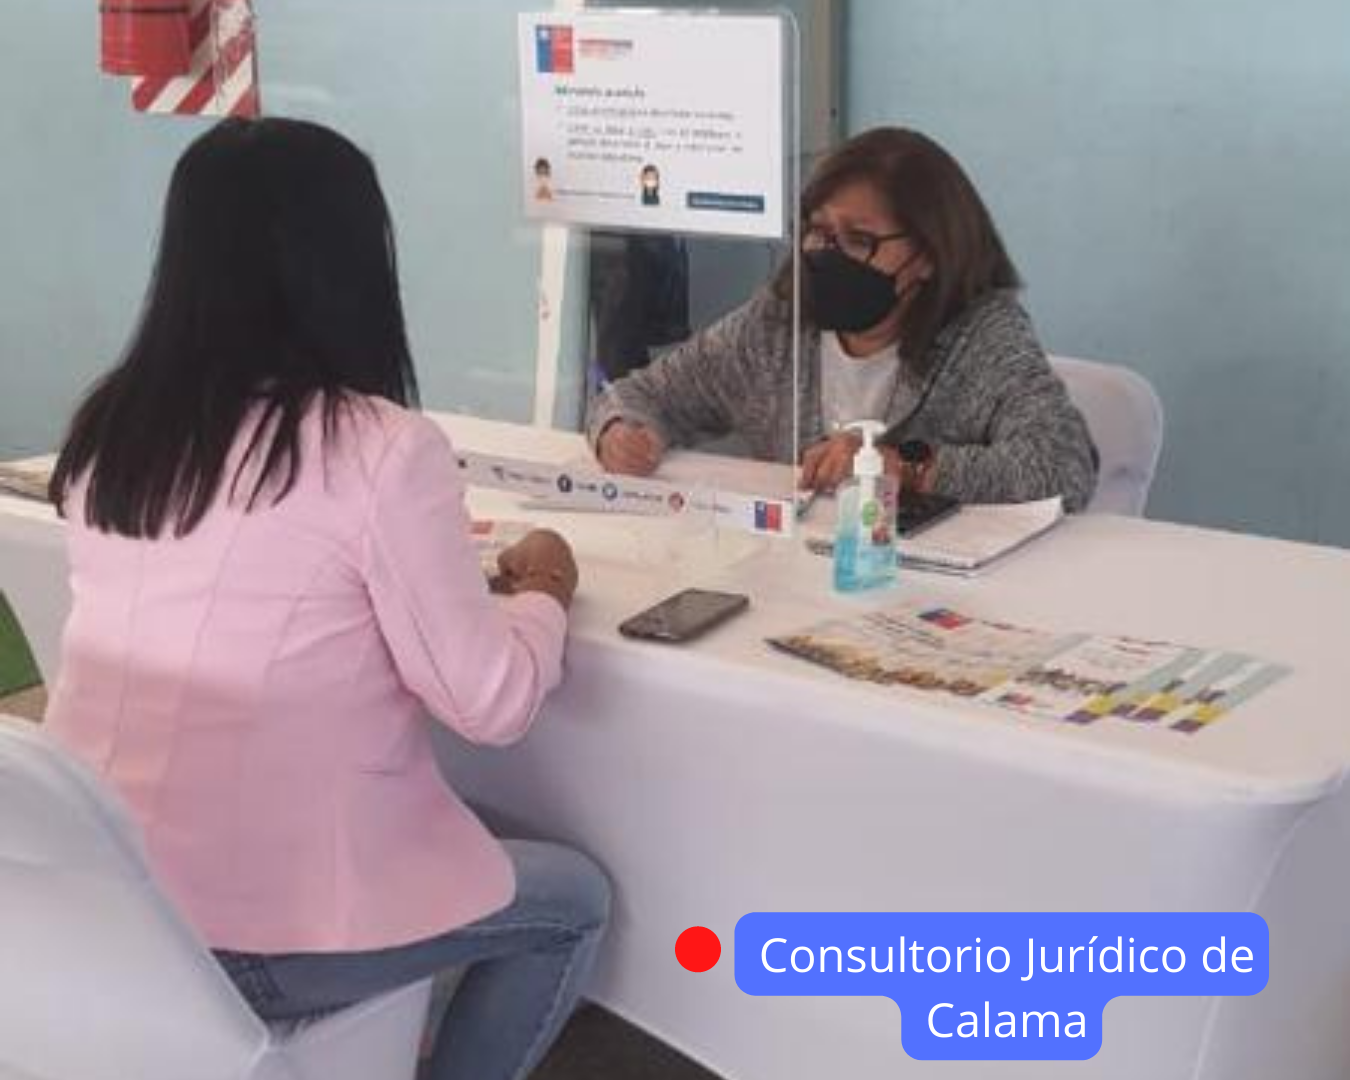 Consultorio Jurídico de Calama atiende en Toconao en el Día de la Mujer